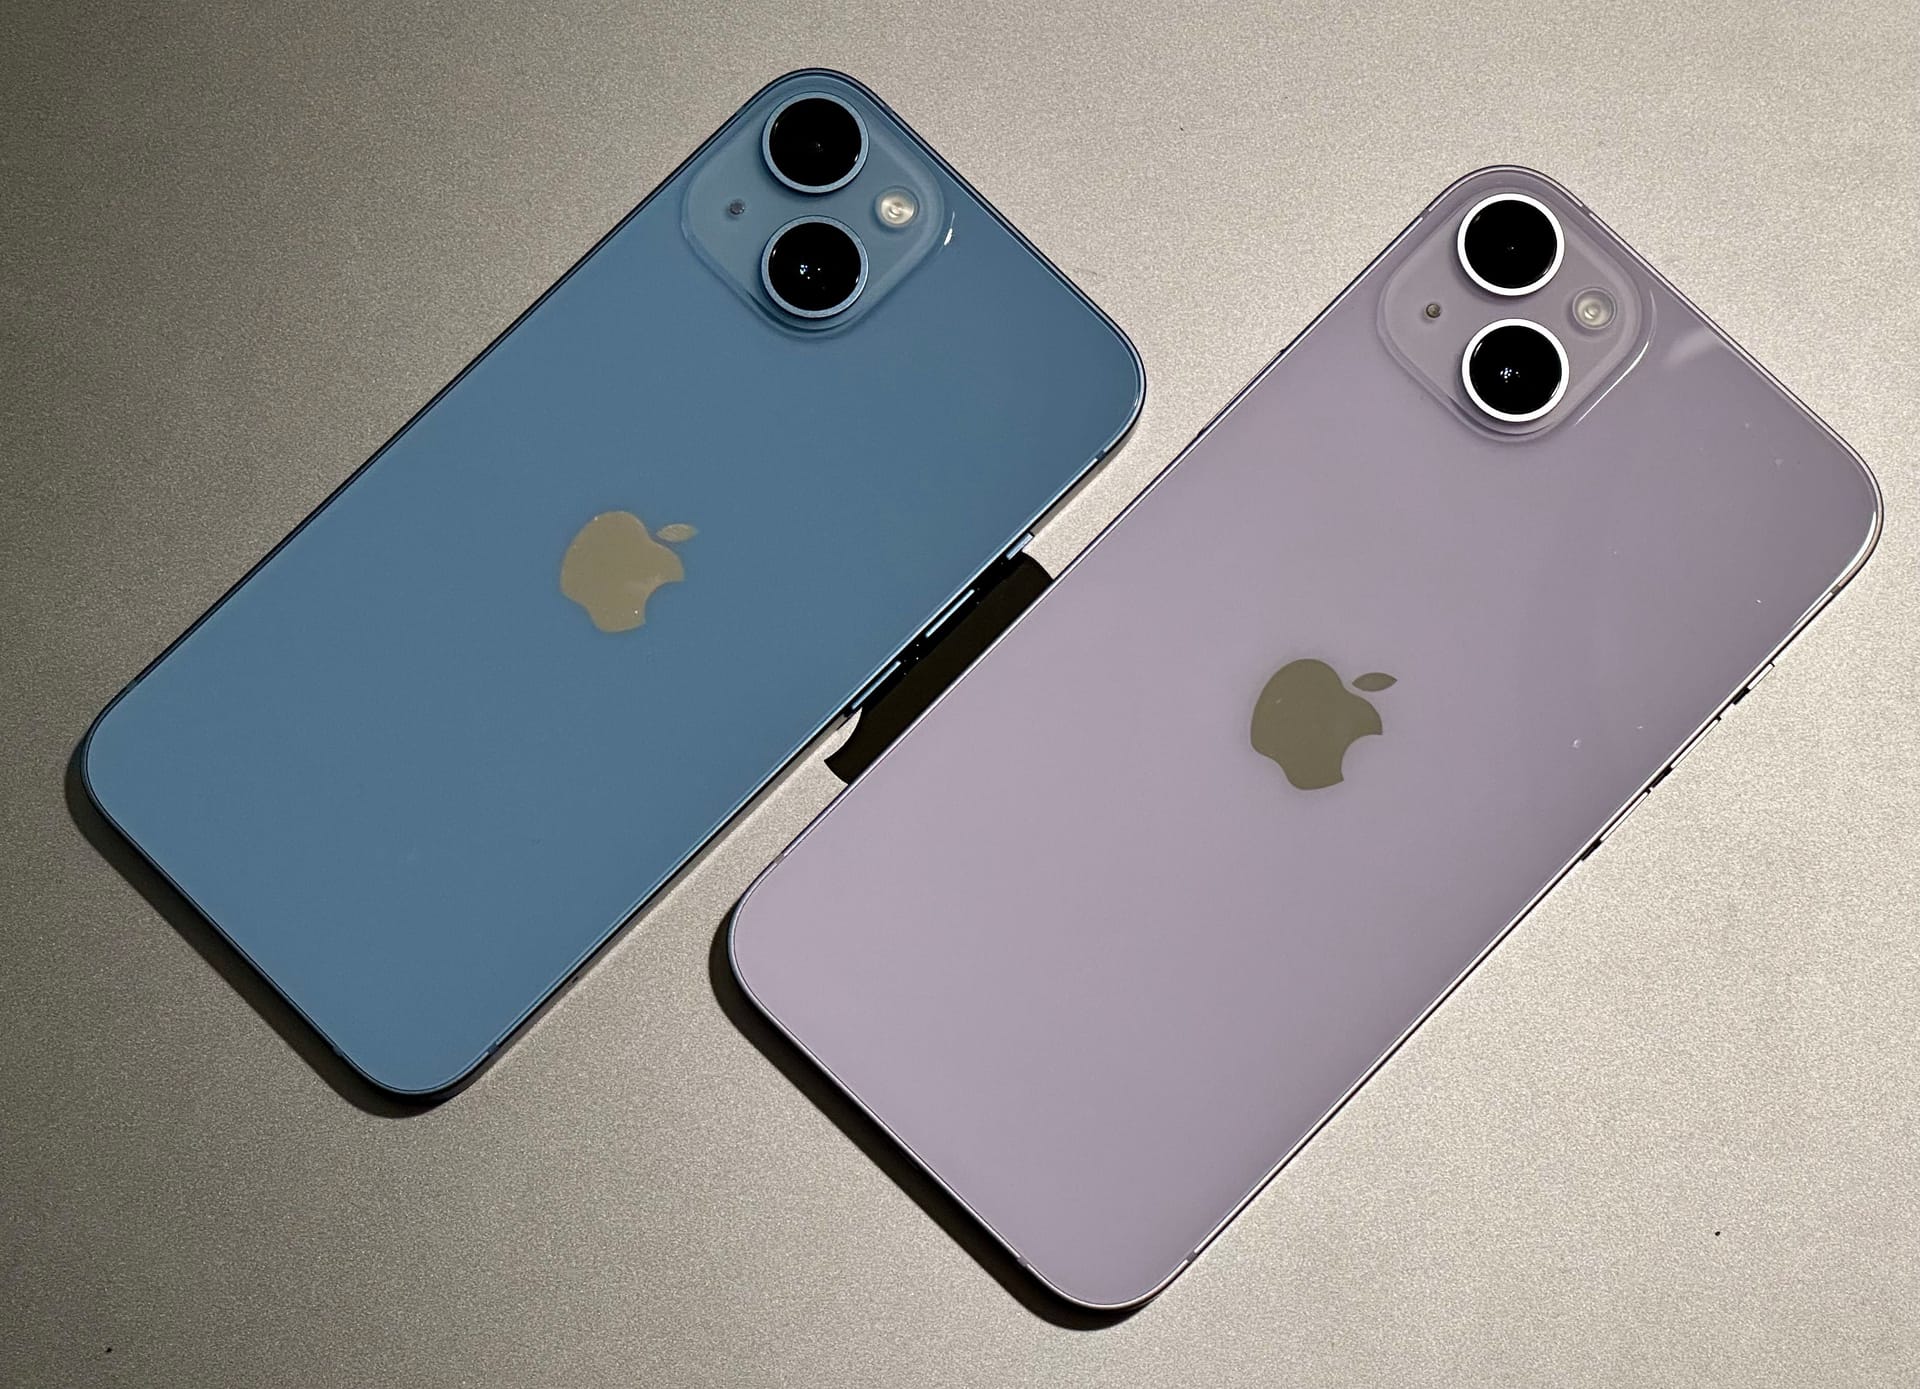 Das iPhone 14 im neuen Blau und das iPhone 14 Plus im neuen Violett. Die Farben lassen sich nur schlecht wiedergeben.